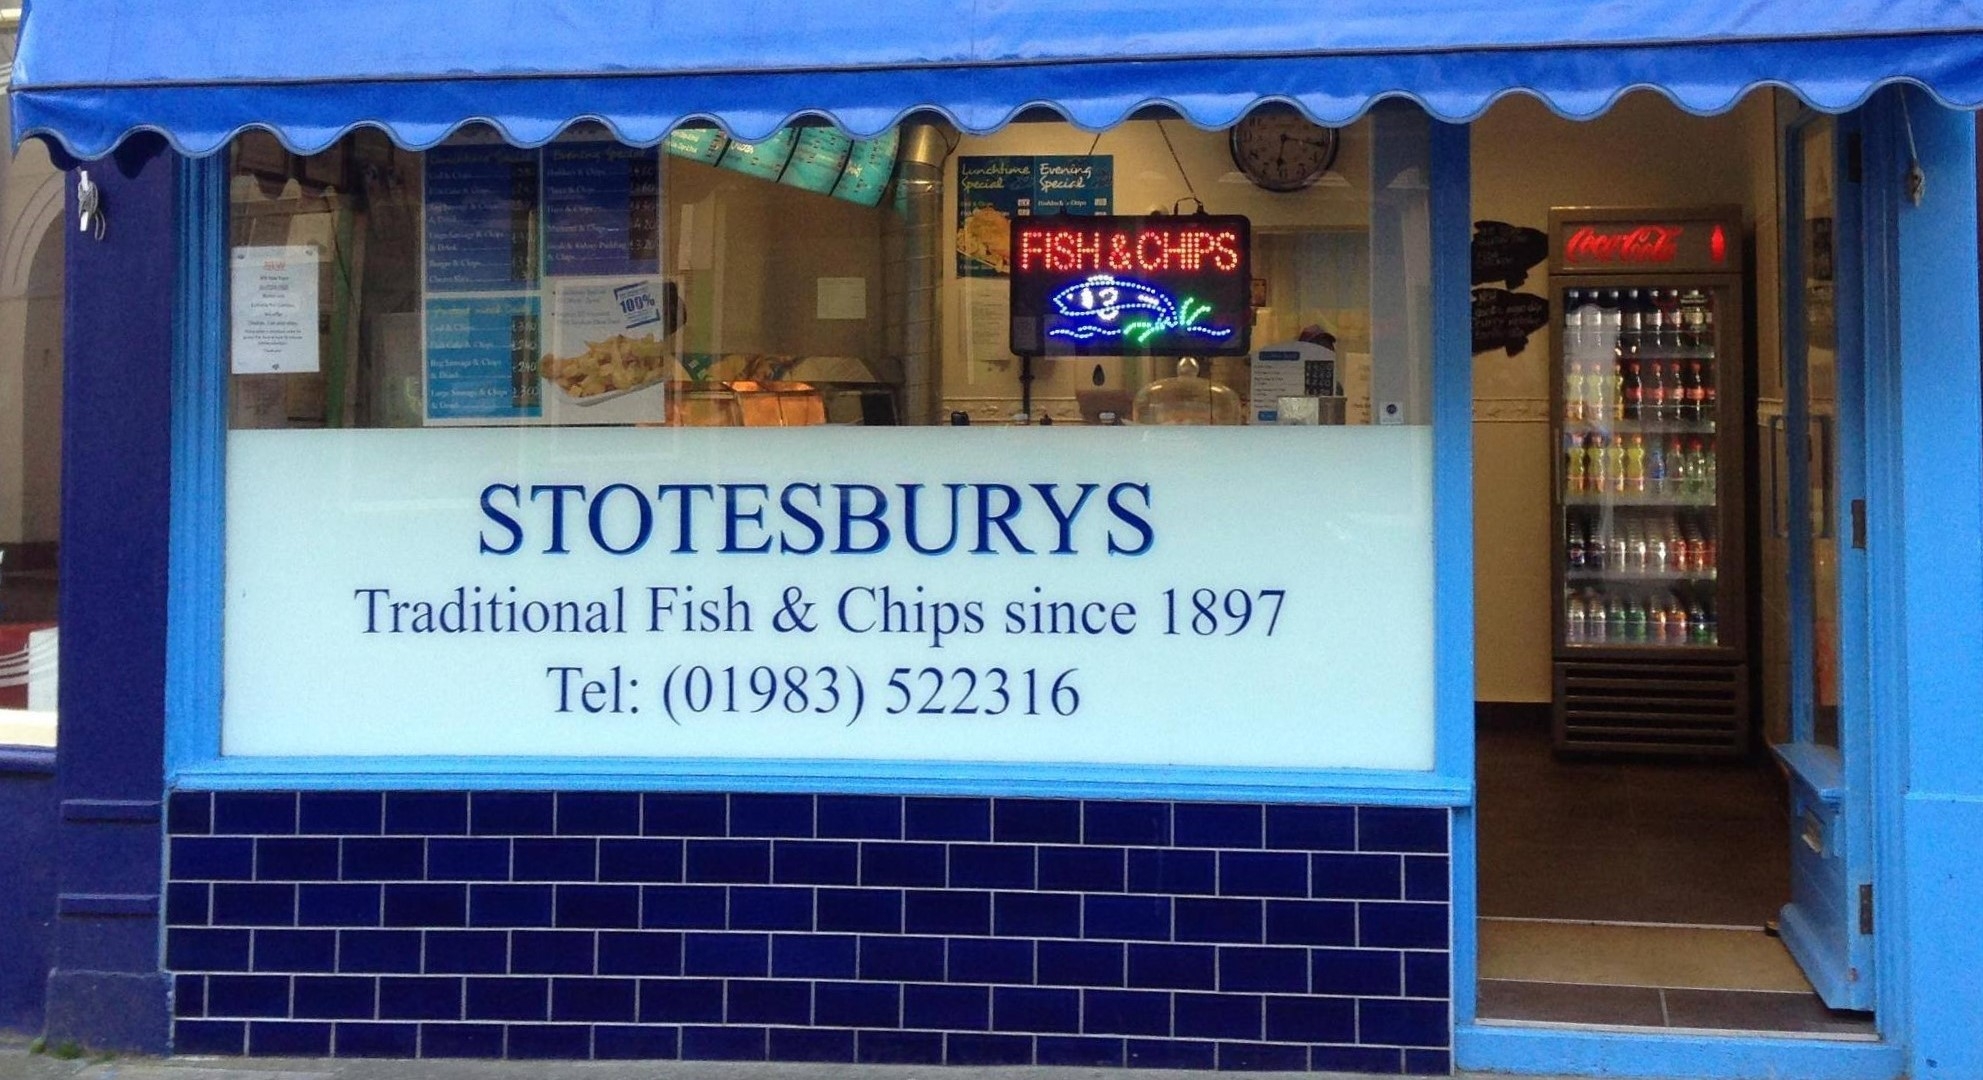 stotesbury's blue themed shopfront